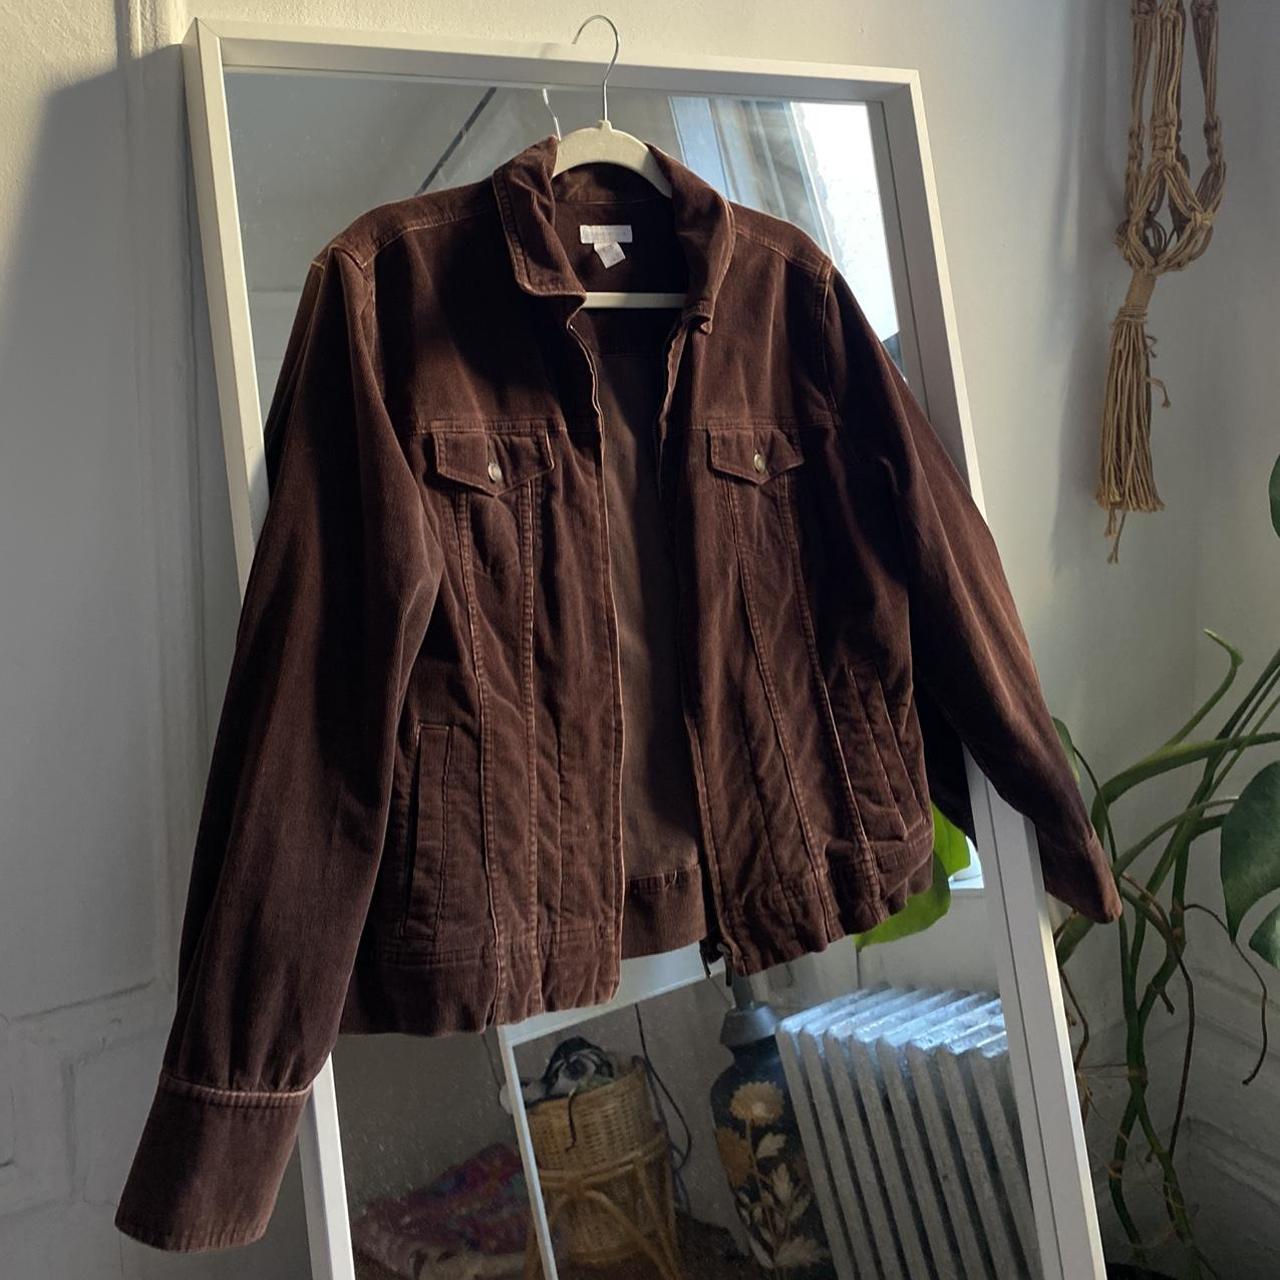 Vintage corduroy jacket! Marked size L can fit... - Depop